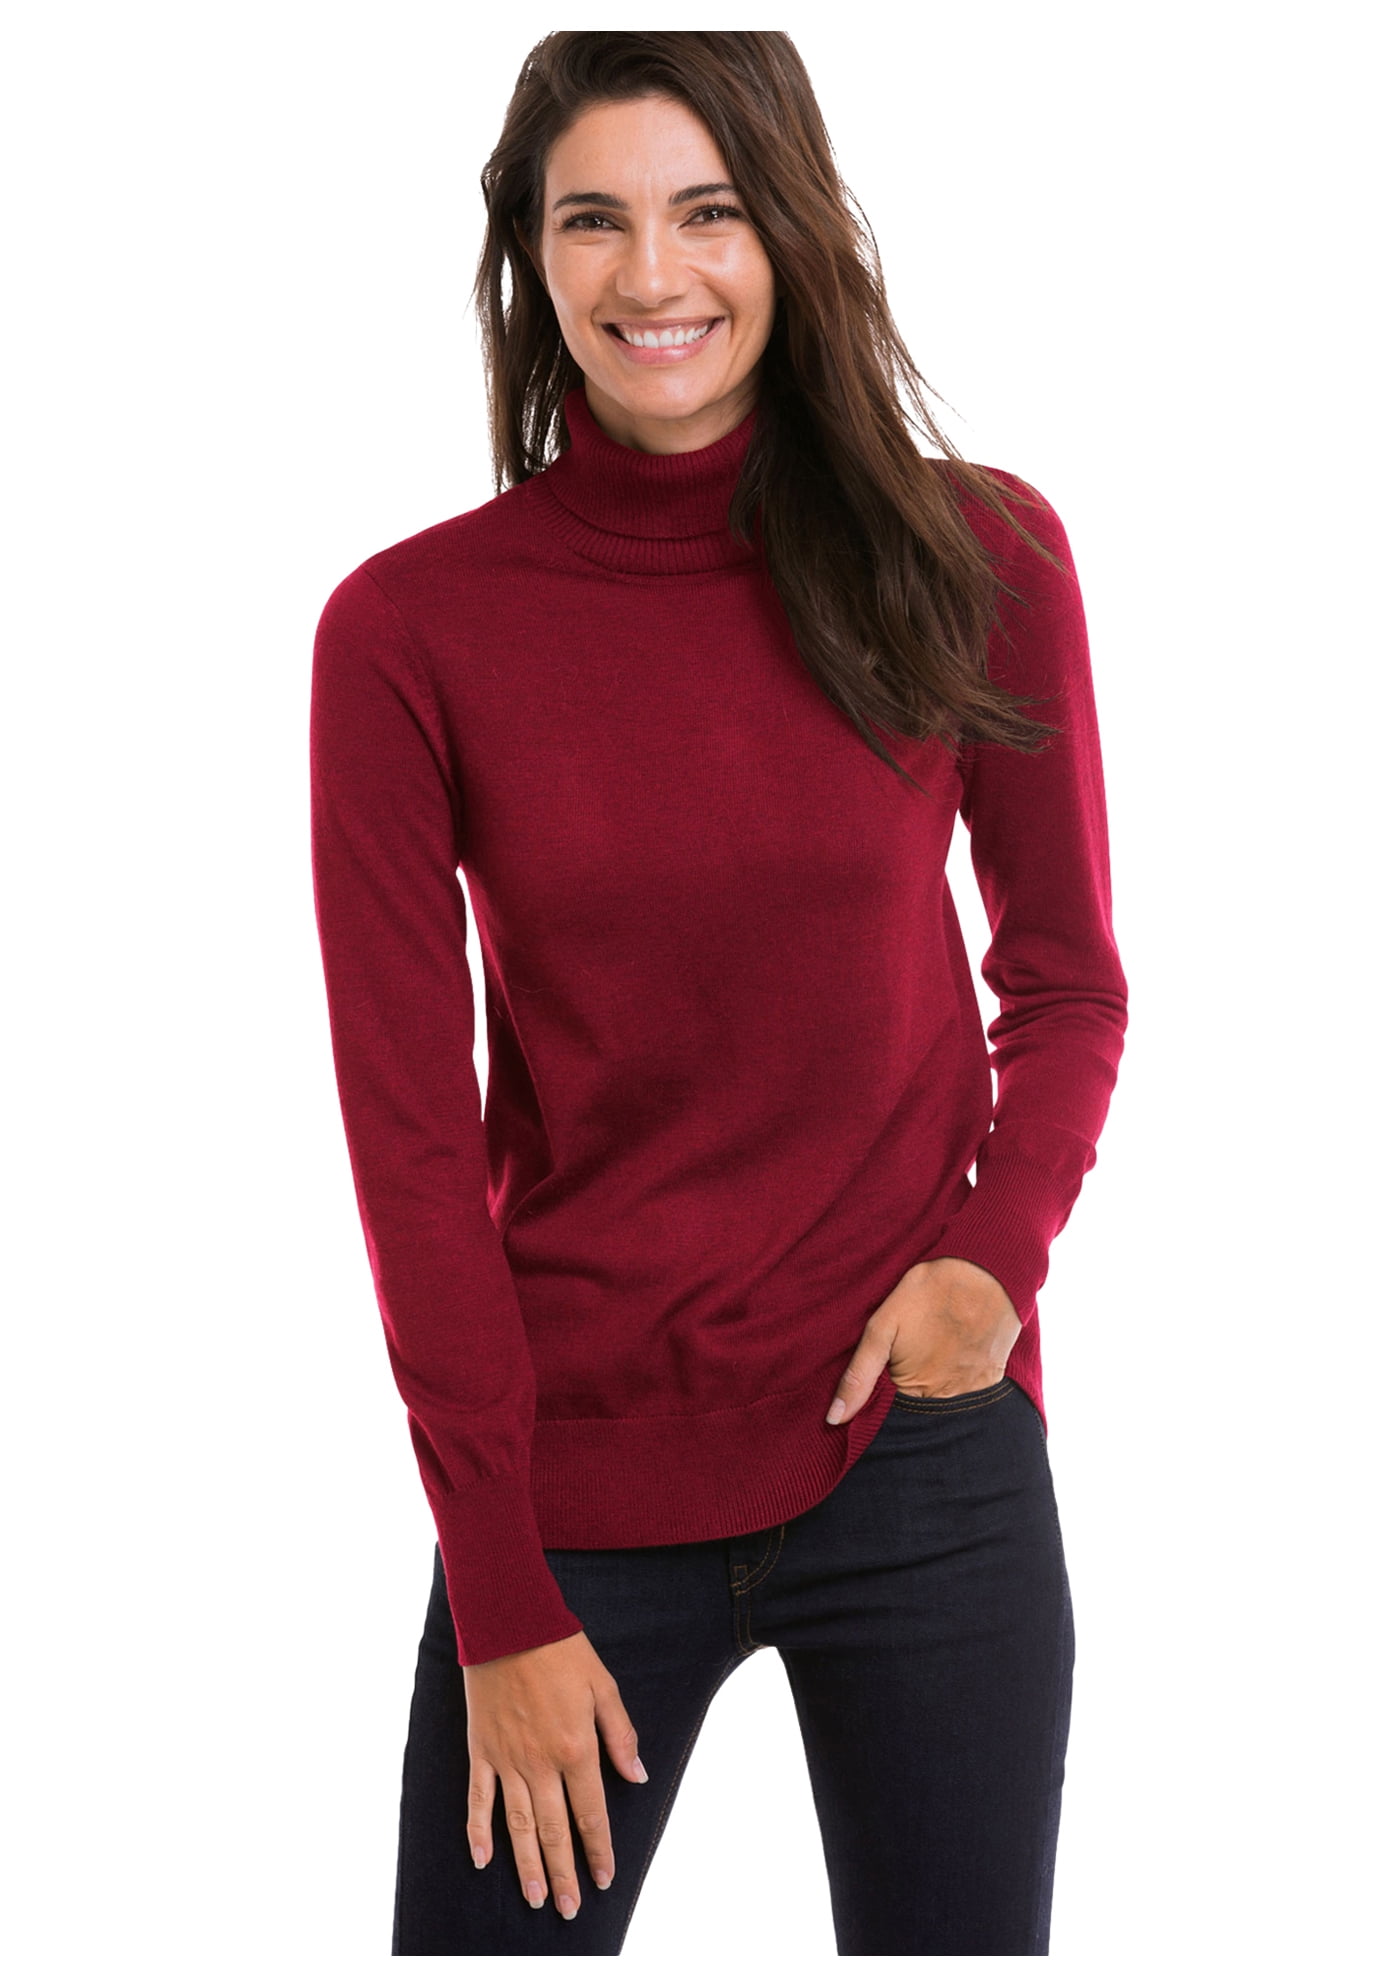 Cincizeci a confirma jeleu  Ellos Women's Turtleneck Sweater Pullover - Walmart.com